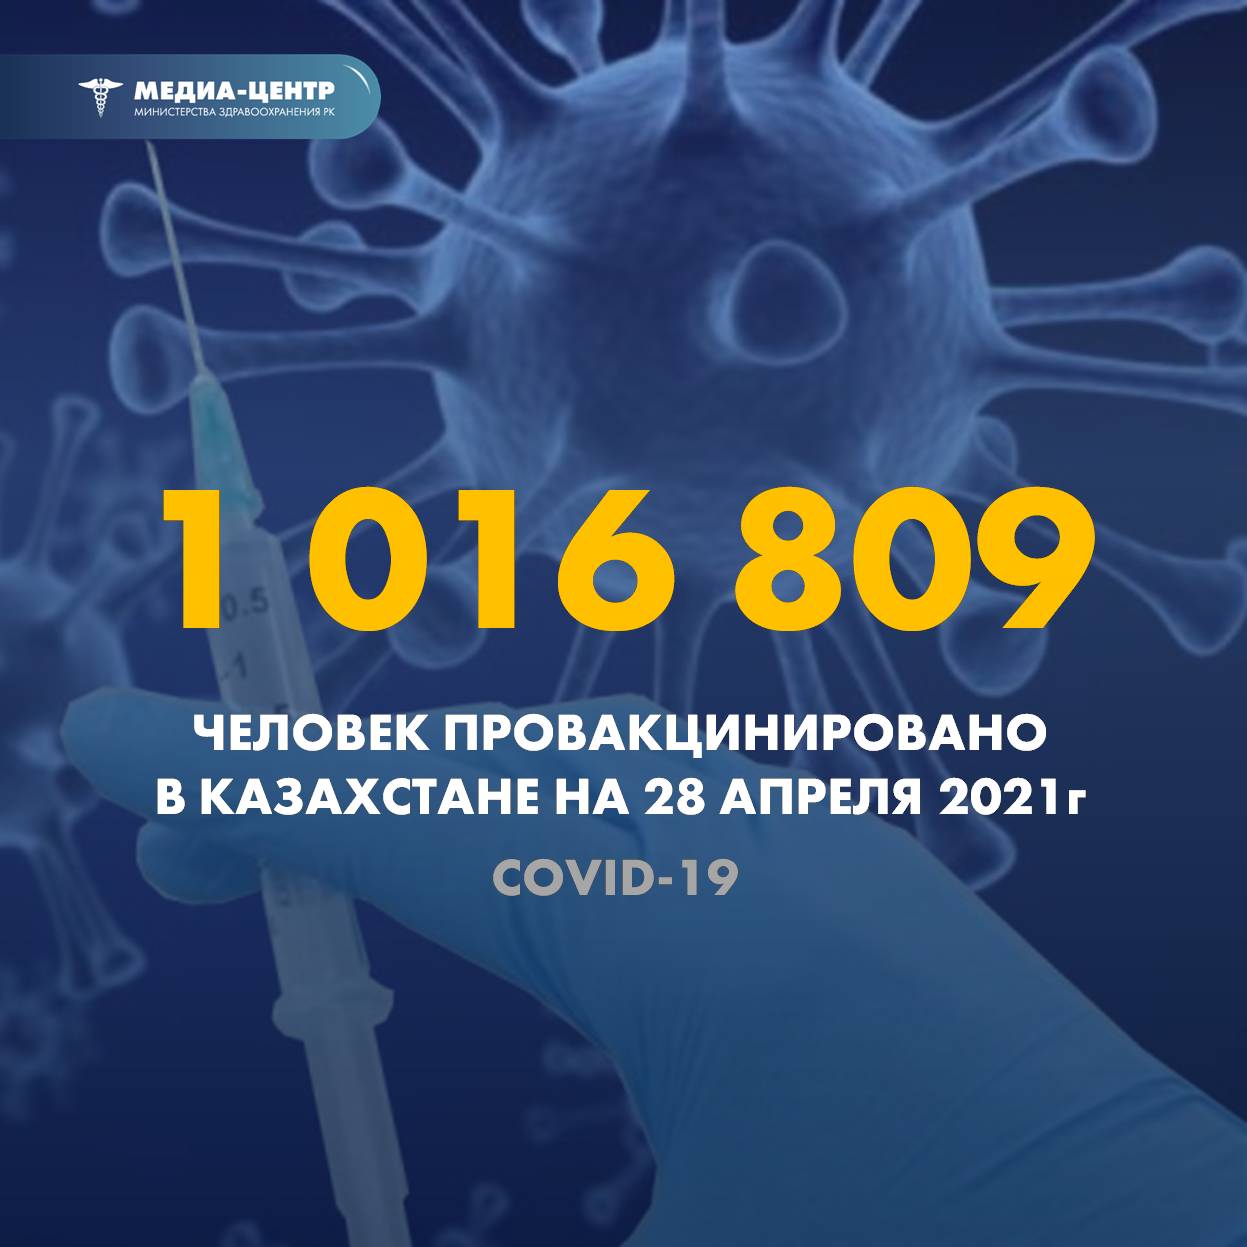 1 016 809 человек провакцинировано в Казахстане на 28 апреля 2021 г